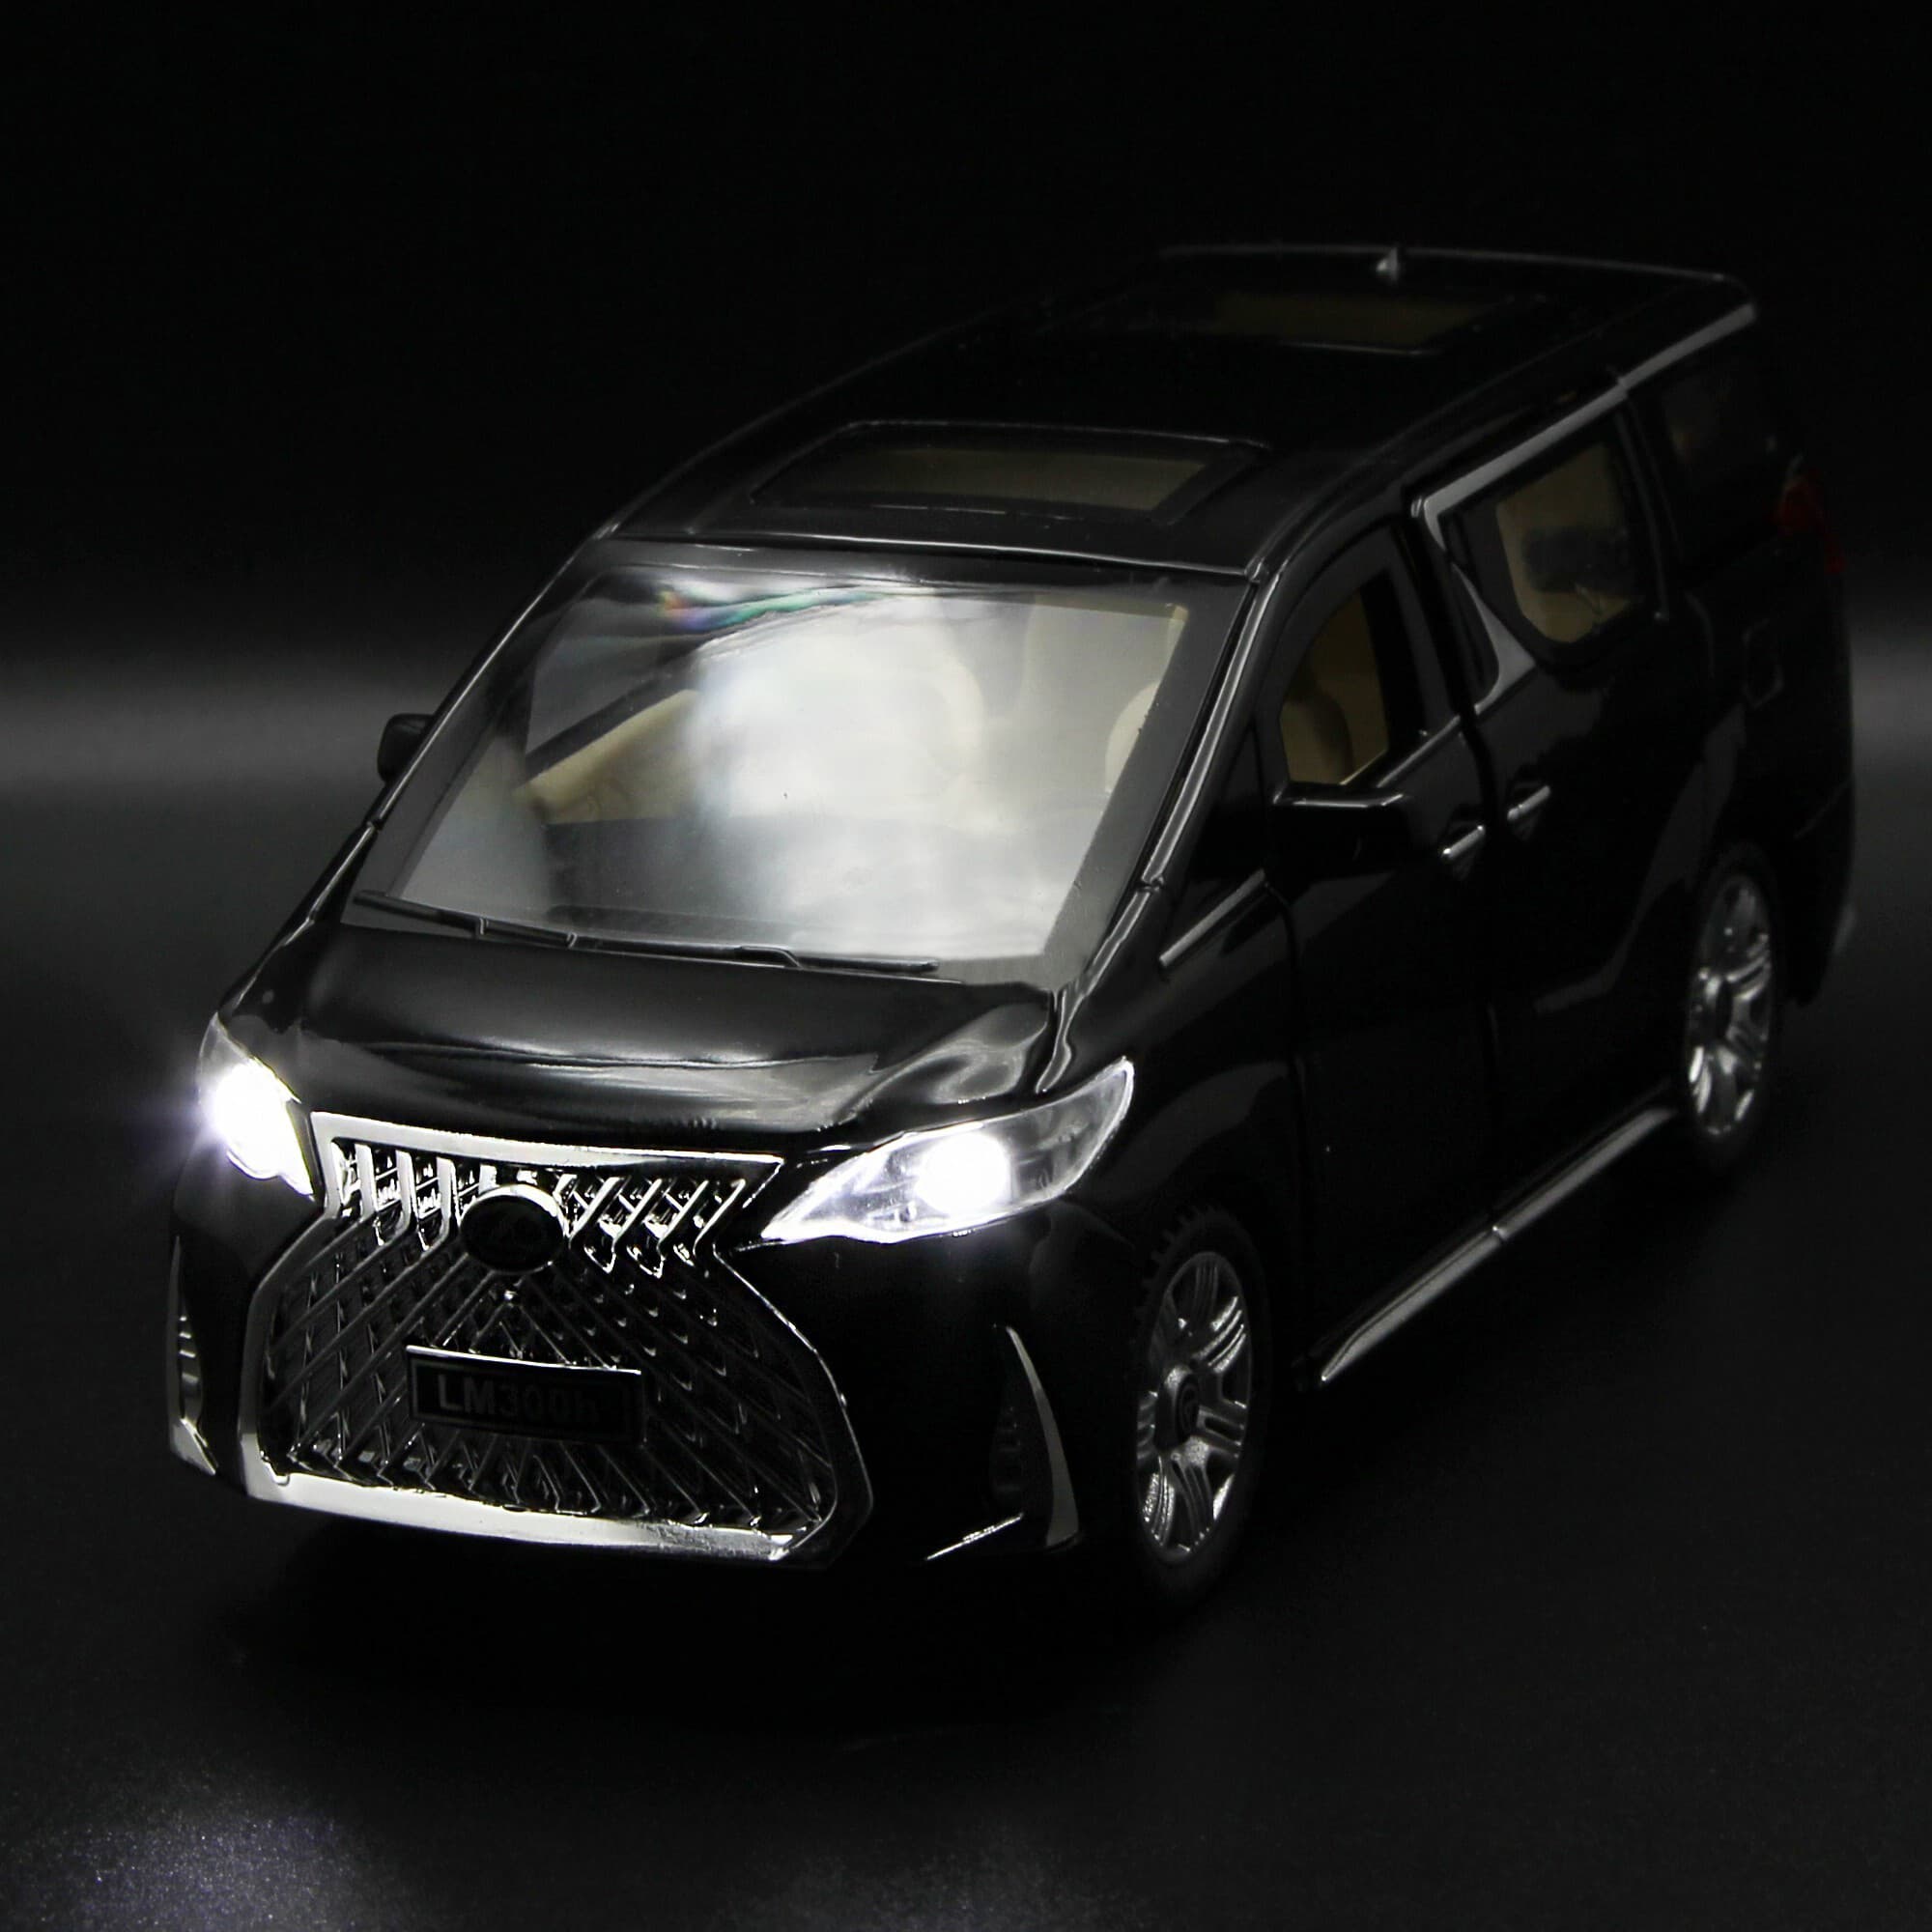 Металлическая машинка Chimei Model 1:32 «Lexus LM300h» А32481 16 см. инерционная, свет, звук / Черный